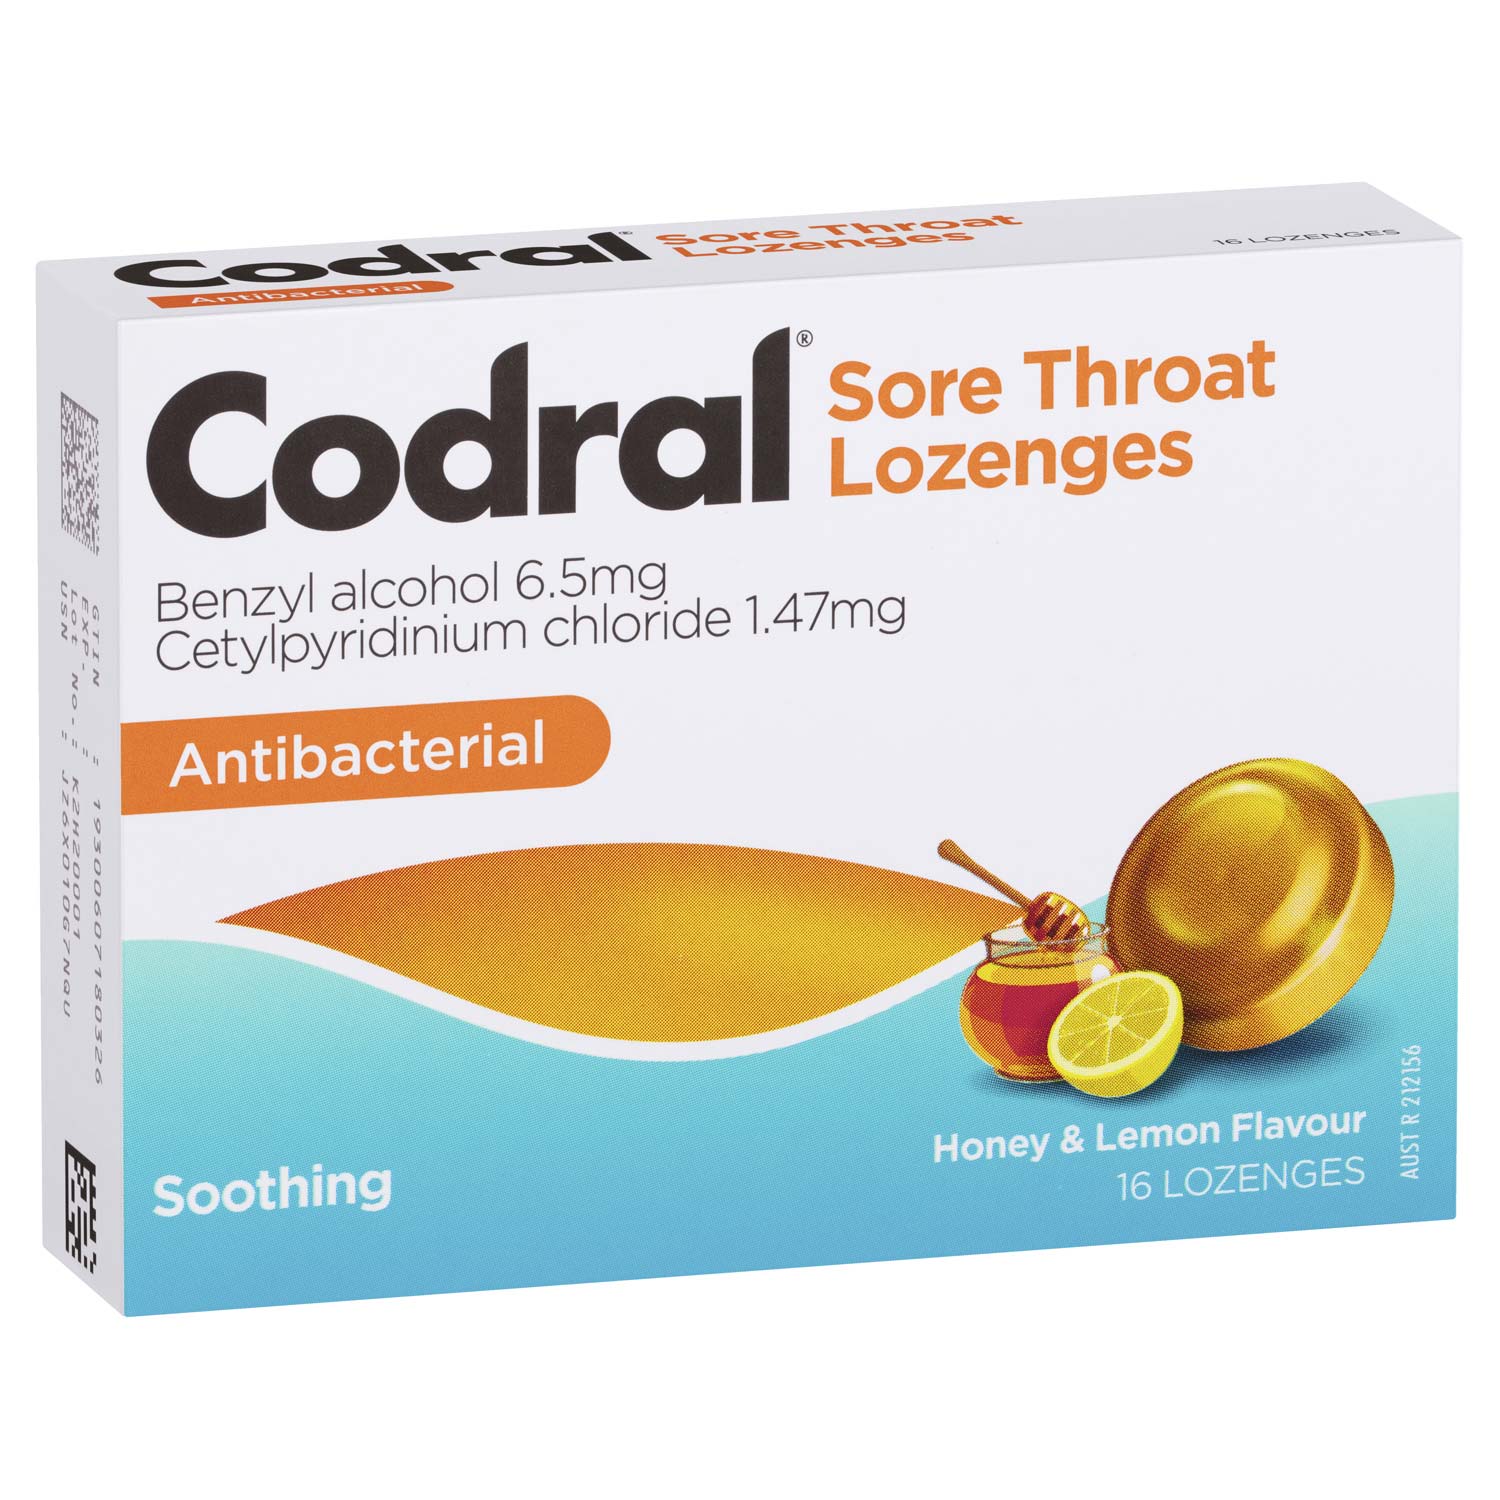 Sore throat for lozenge 10 Best